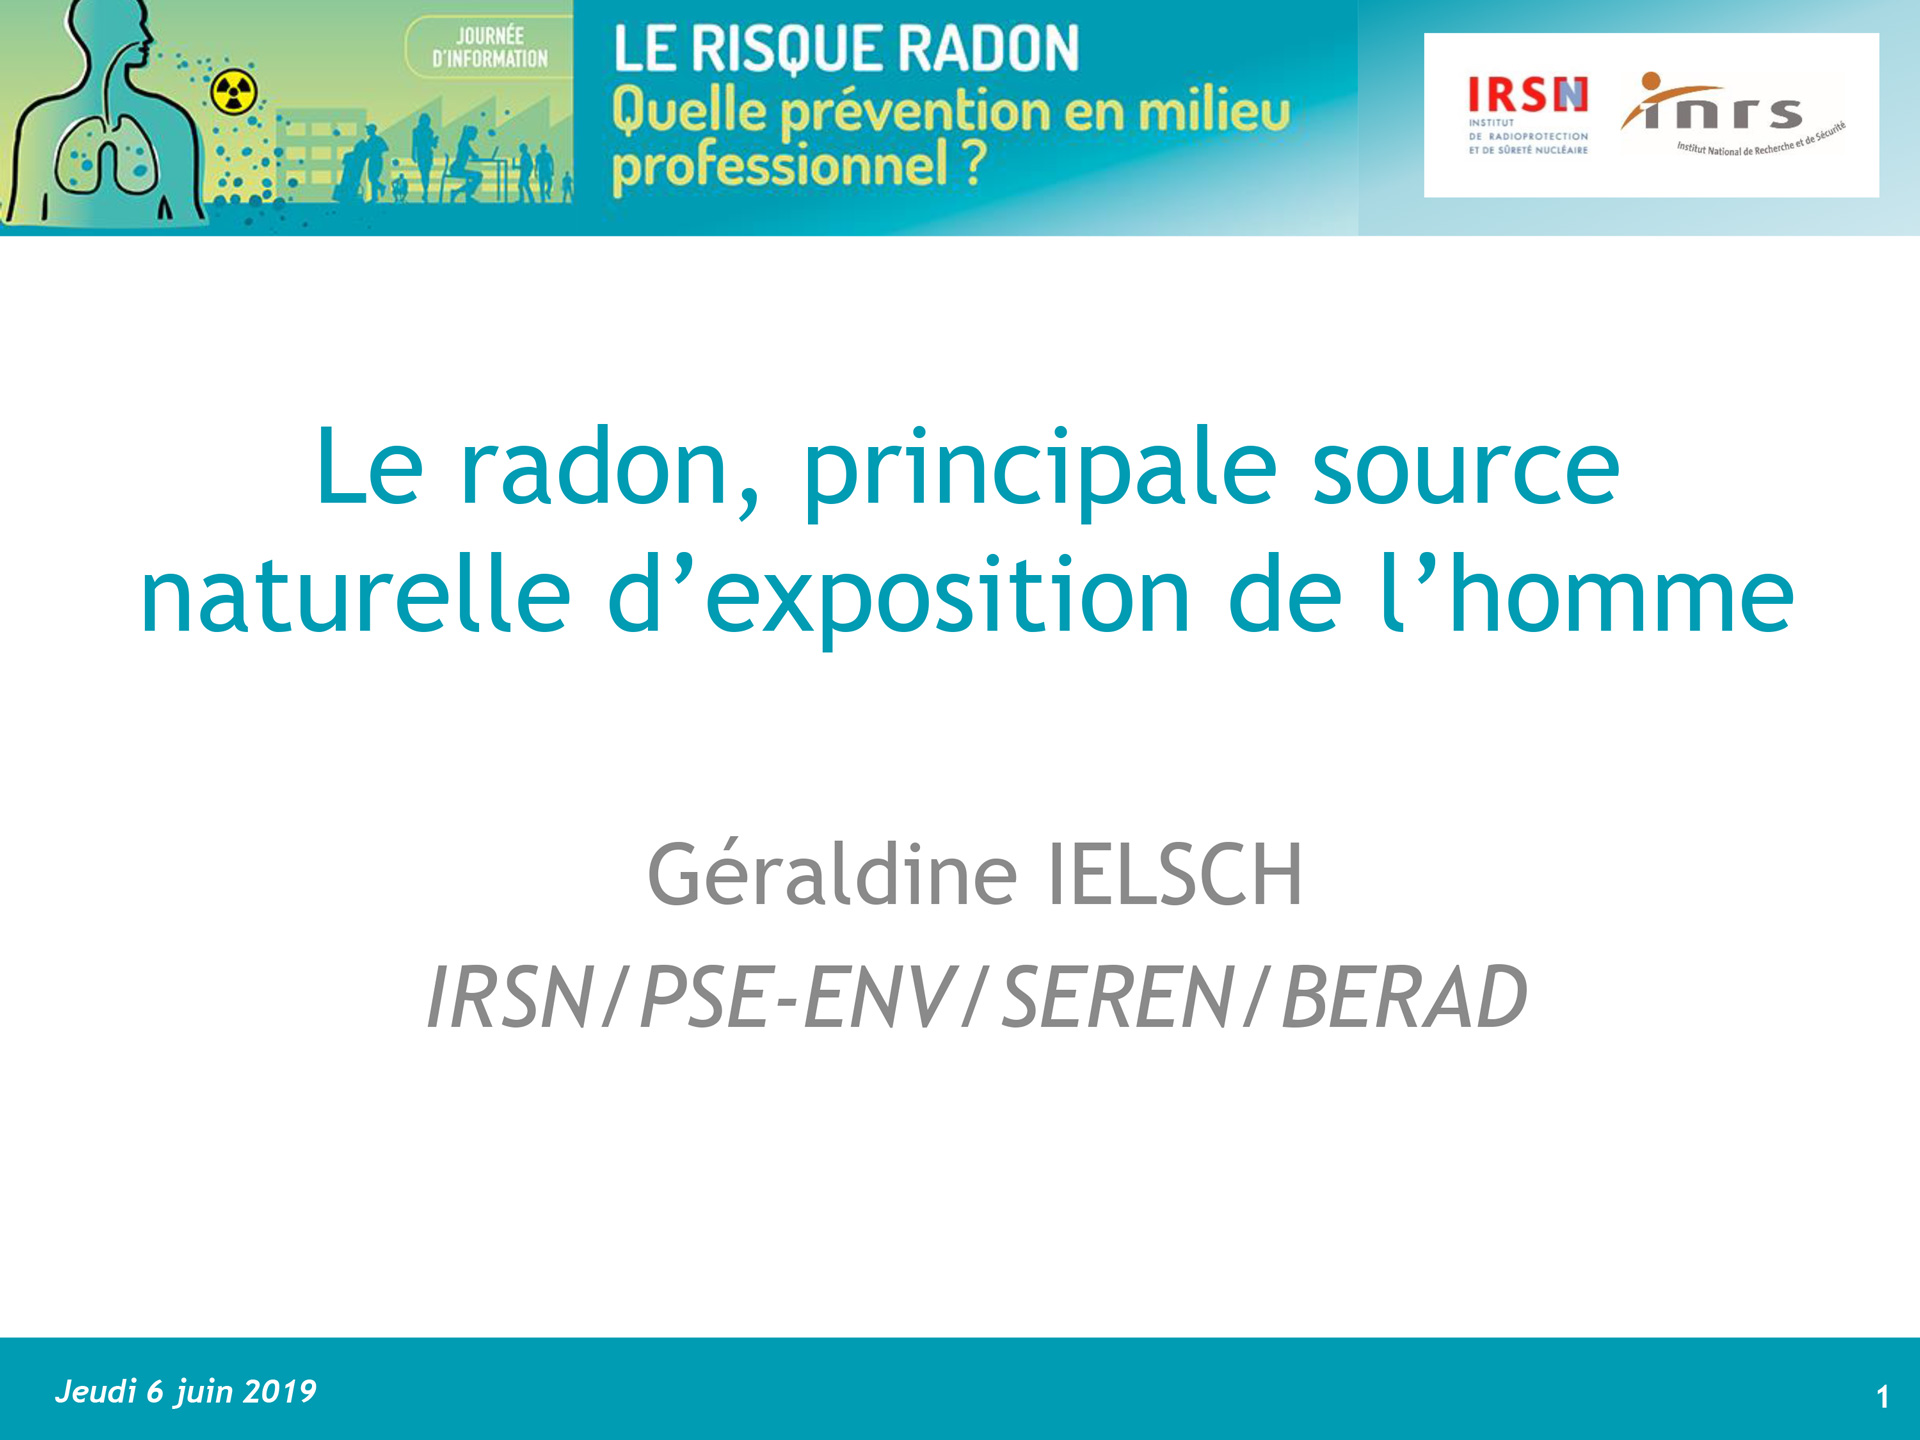 Origine du radon par Géraldine IELSCH, IRSN